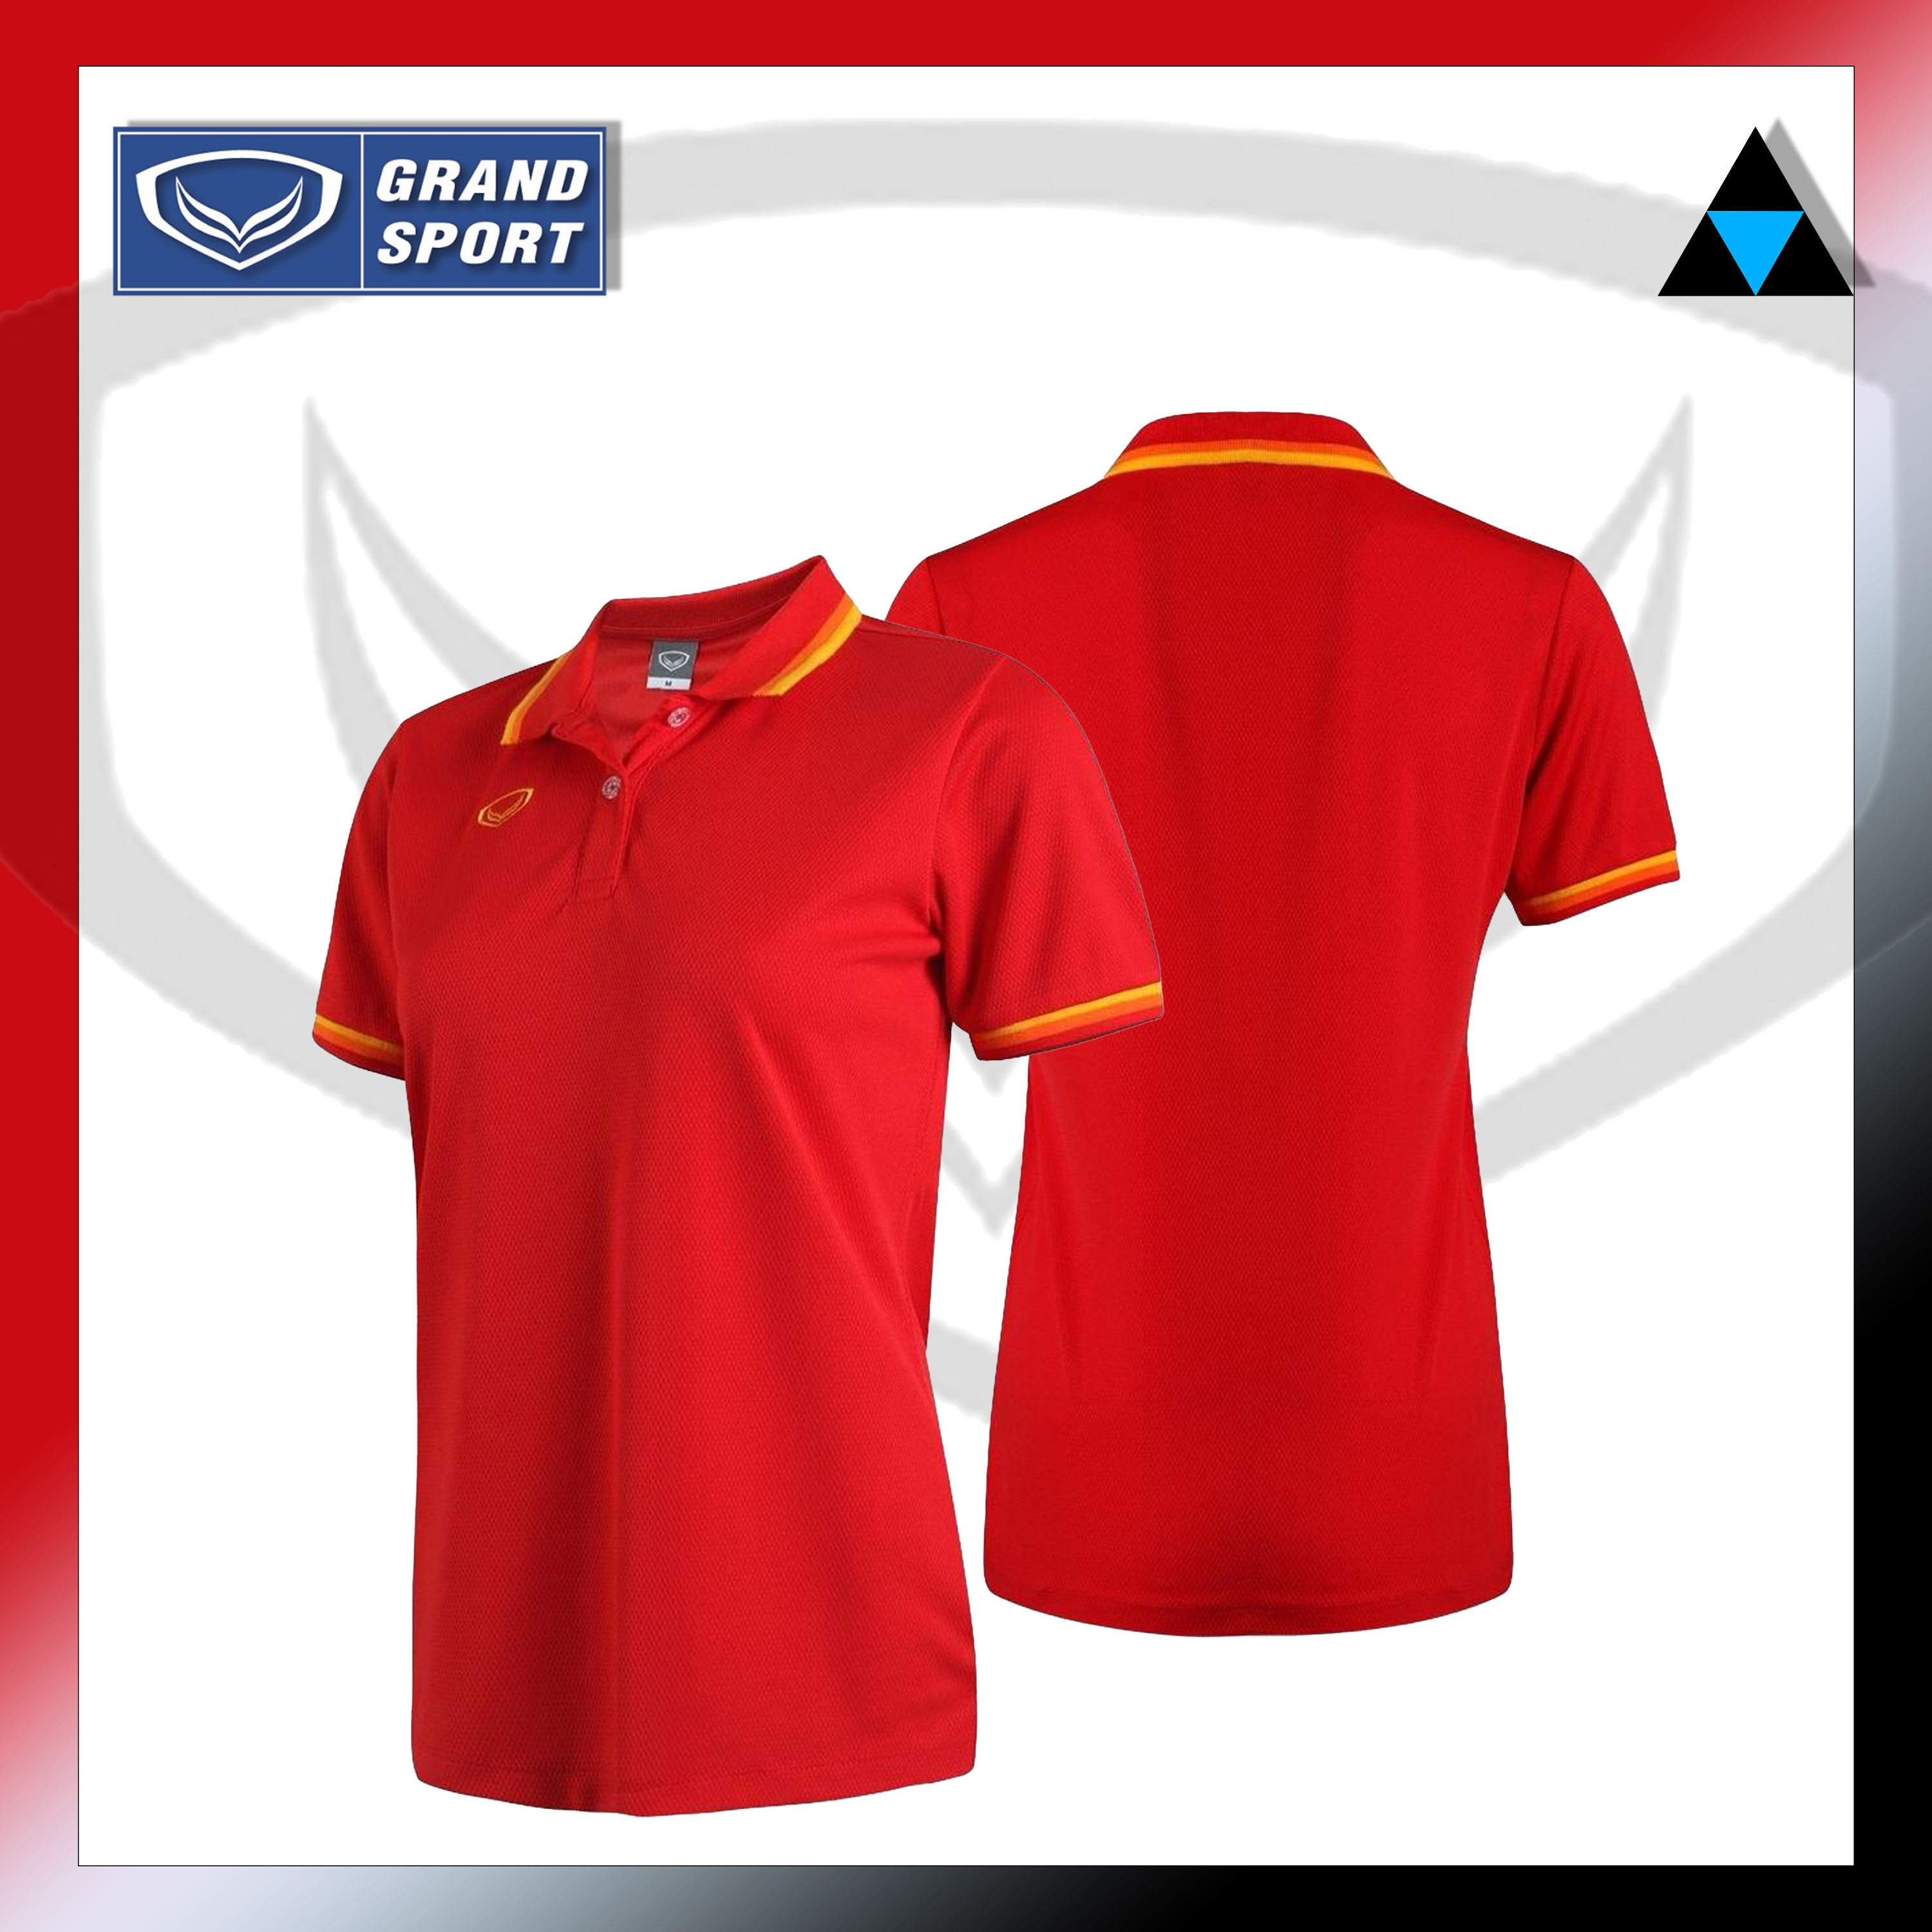 เสื้อโปโลหญิงแกรนด์สปอร์ต-รหัส-012788grand-sport-แท้100